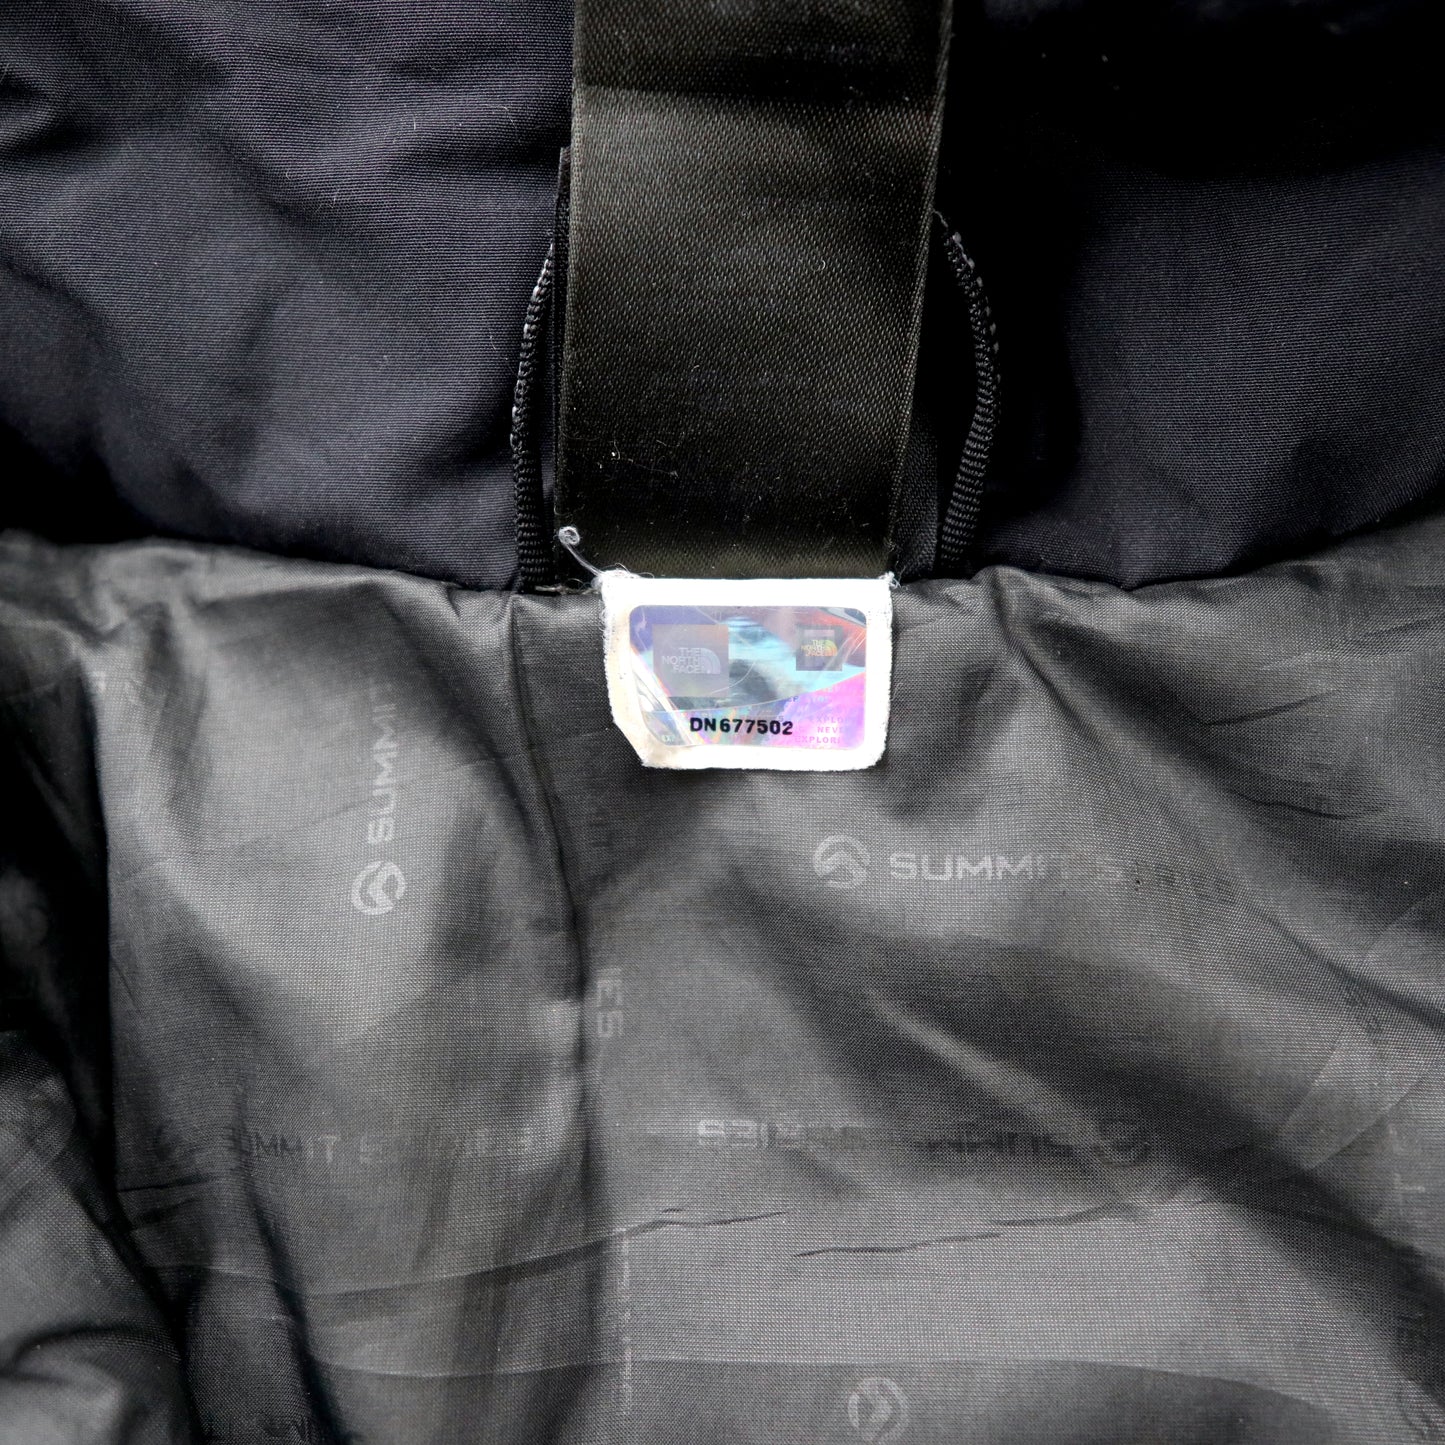 THE NORTH FACE SUMMIT SERIES サミットシリーズ マウンテンジャケット S ブラック PRIMA LOFT 中綿 HYVENT ALPHA 防水 ダブルジップ